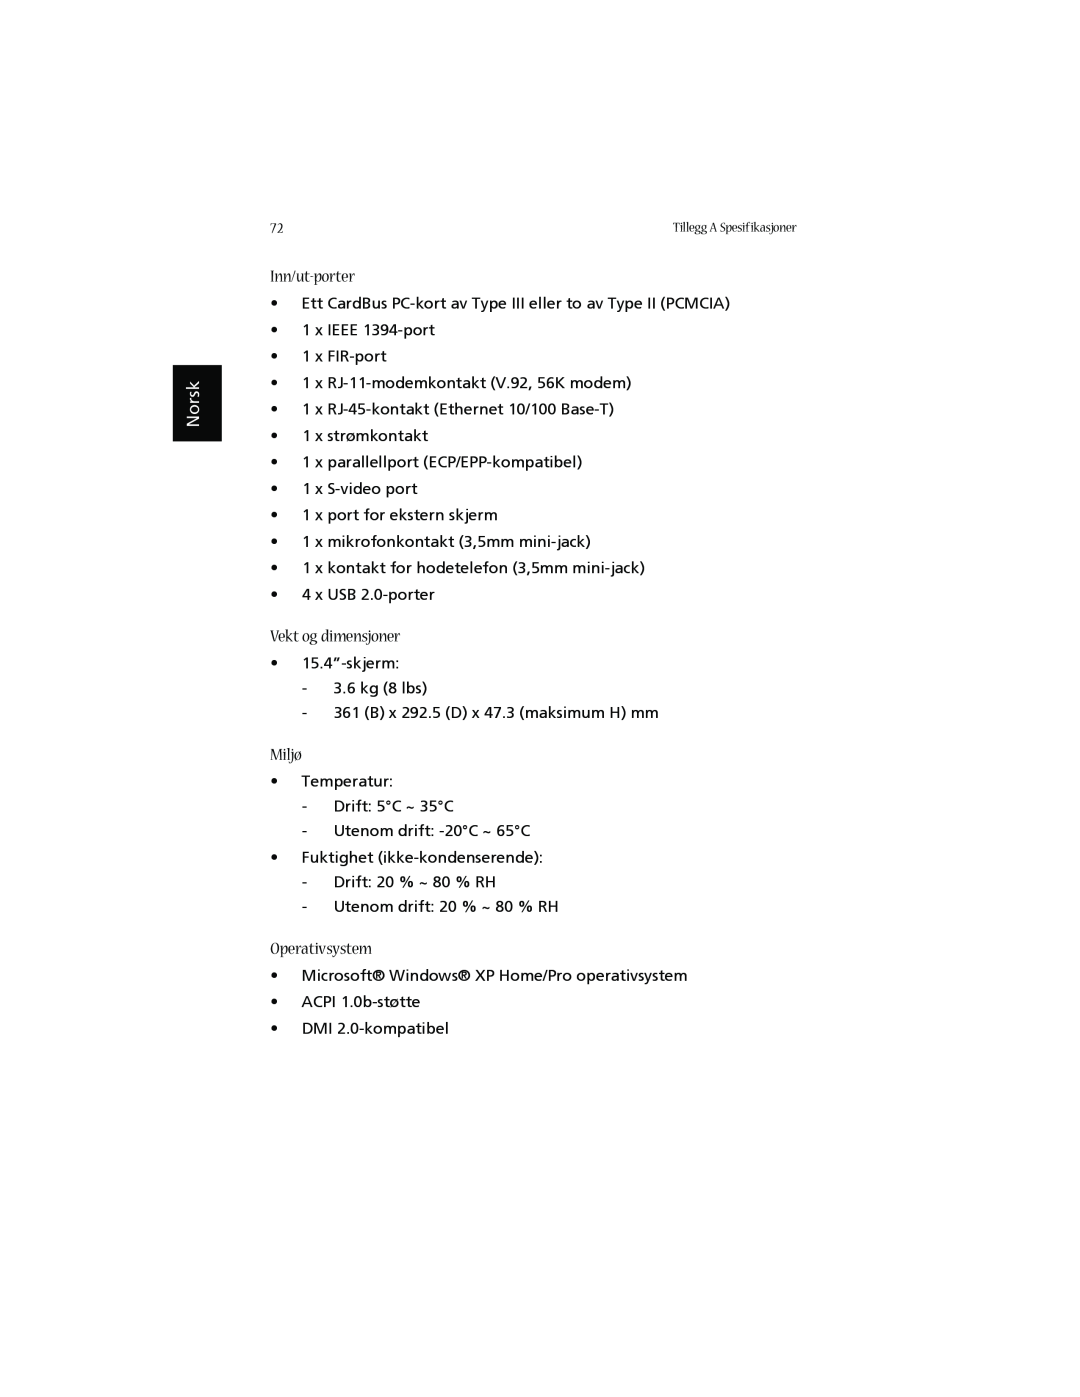 Acer 1660 manual Inn/ut-porter, Vekt og dimensjoner, Miljø, Operativsystem, Norsk 